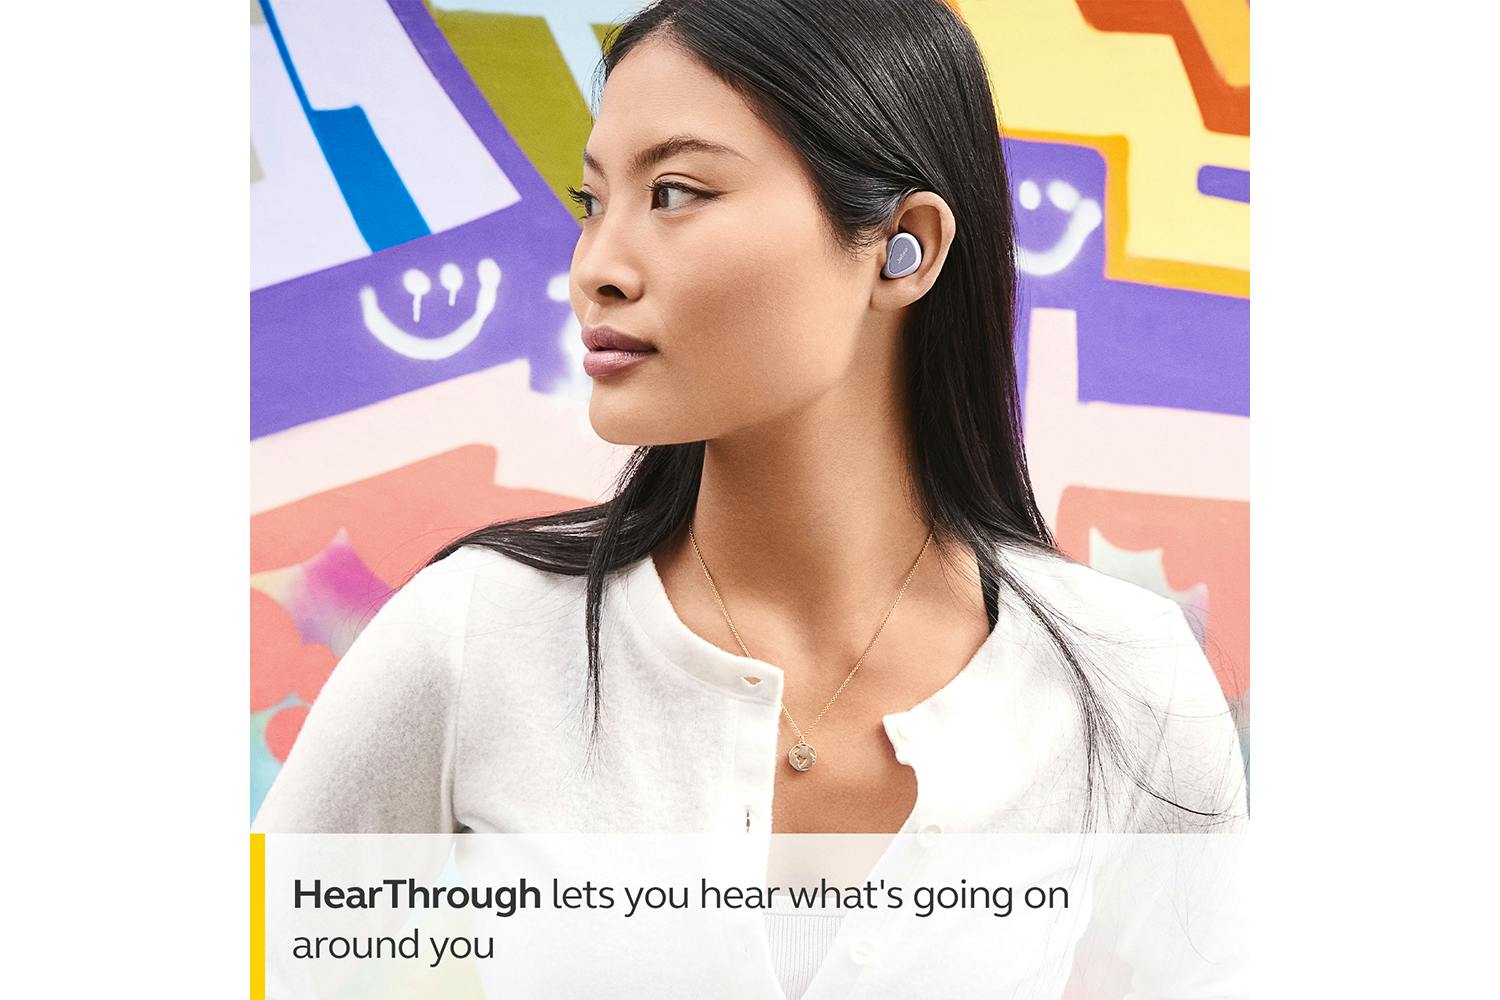 Jabra Elite 3 True Wireless In-Ear Headphones Lilac 100-91410002-02 - Best  Buy